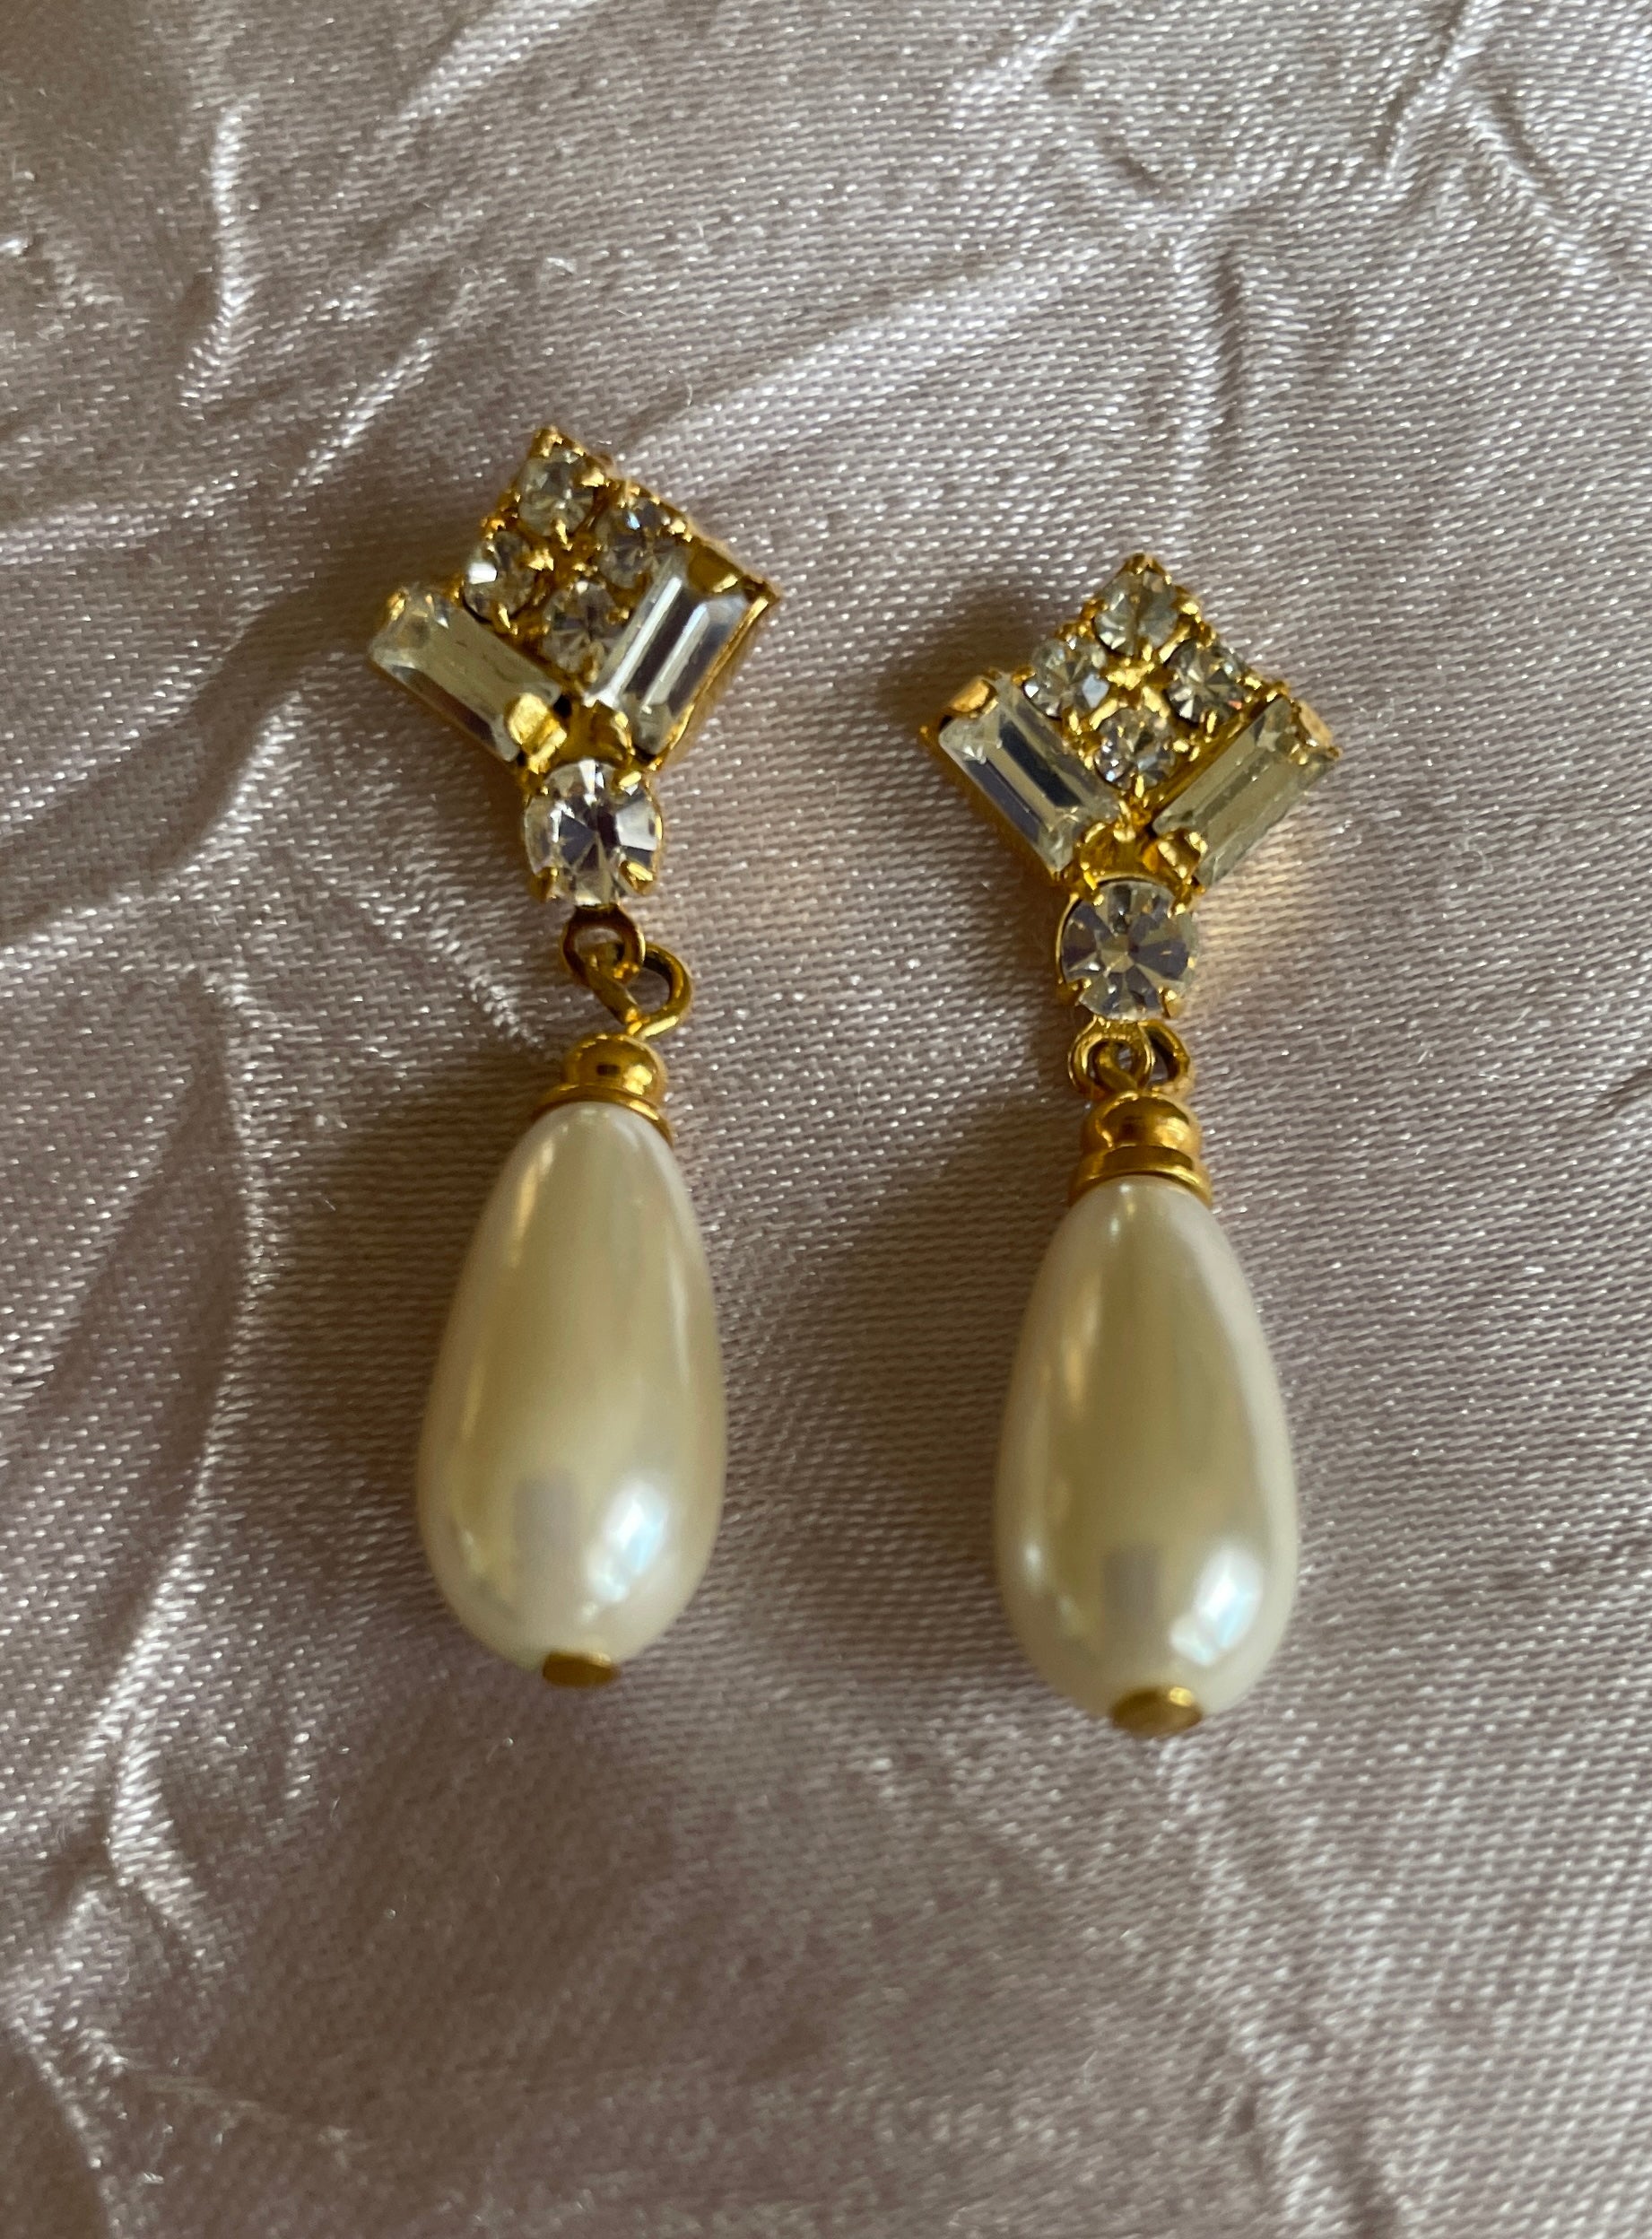 200Os faux pearl earrings 2000s Gold Tone Faux Pearl Crystal Drop Pierced Earrings